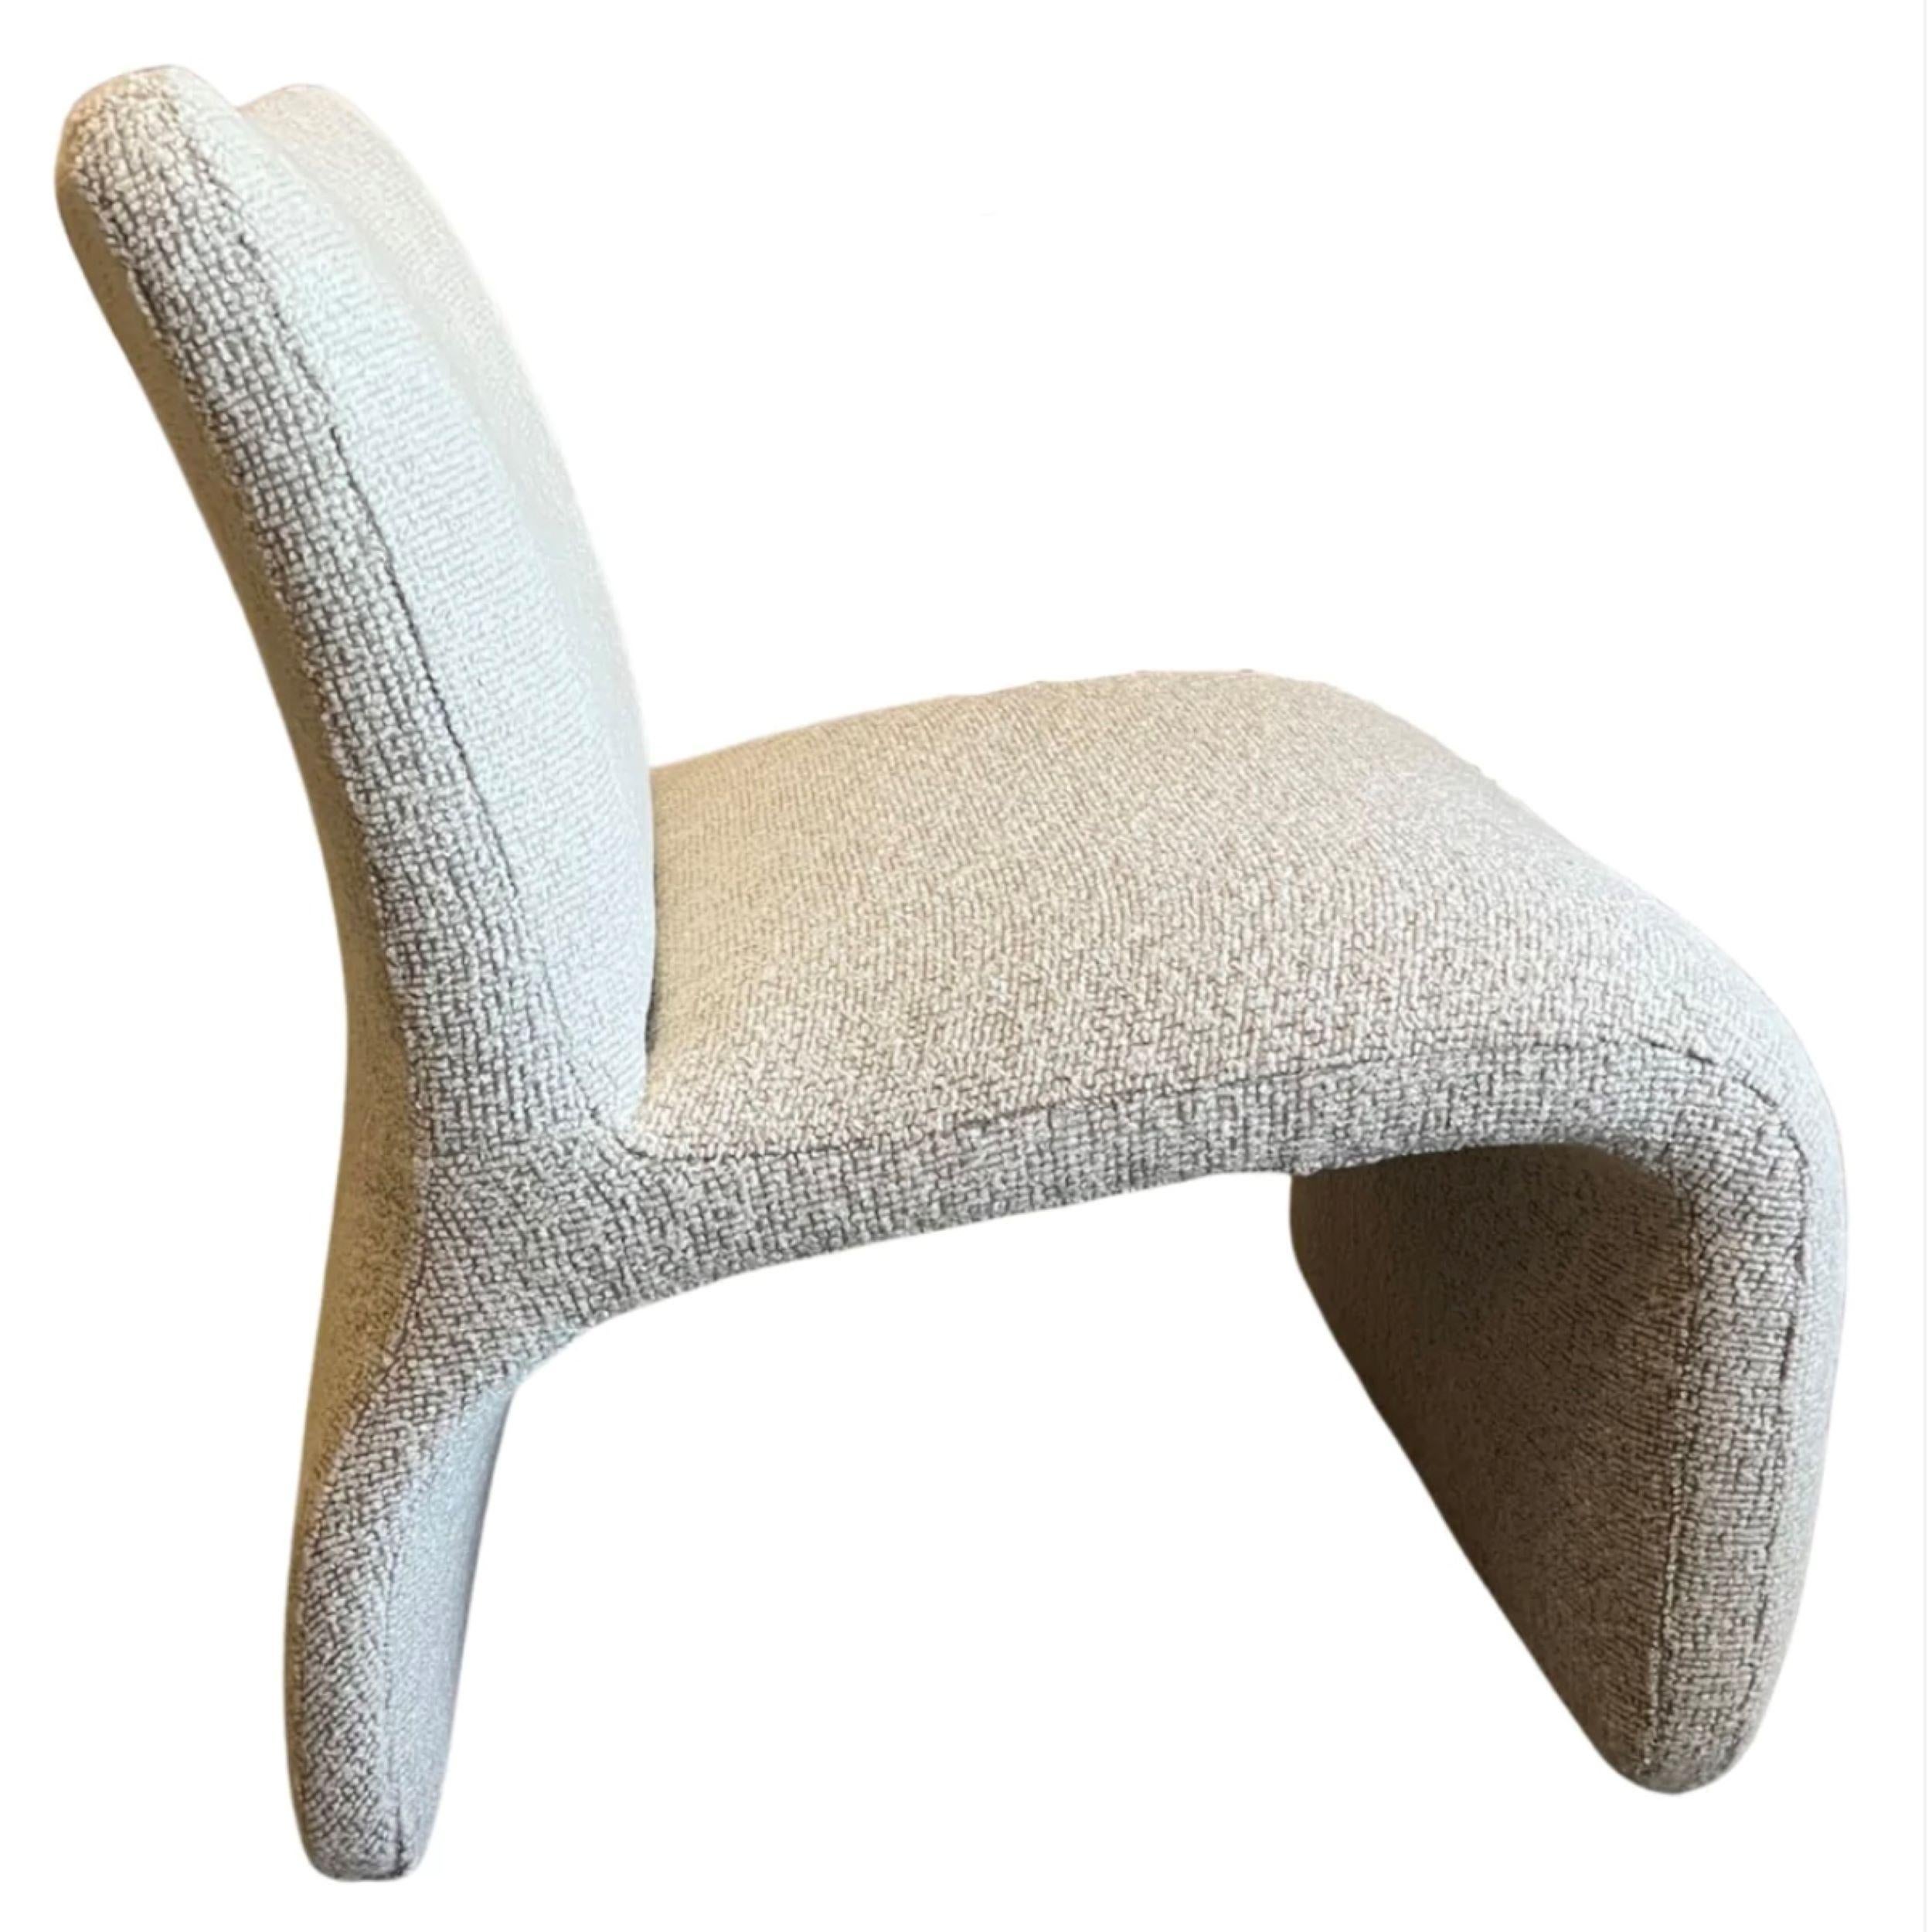 Dies ist ein Paar skulpturaler Loungesessel.

Vladimir Kagan (Designer) zugeschrieben & hergestellt von Weiman Preview Furniture
1980's

Die Stühle wurden gerade mit einem schönen, neutralen Oatmeal Tones Stoff neu gepolstert.

Die Formen sind sehr